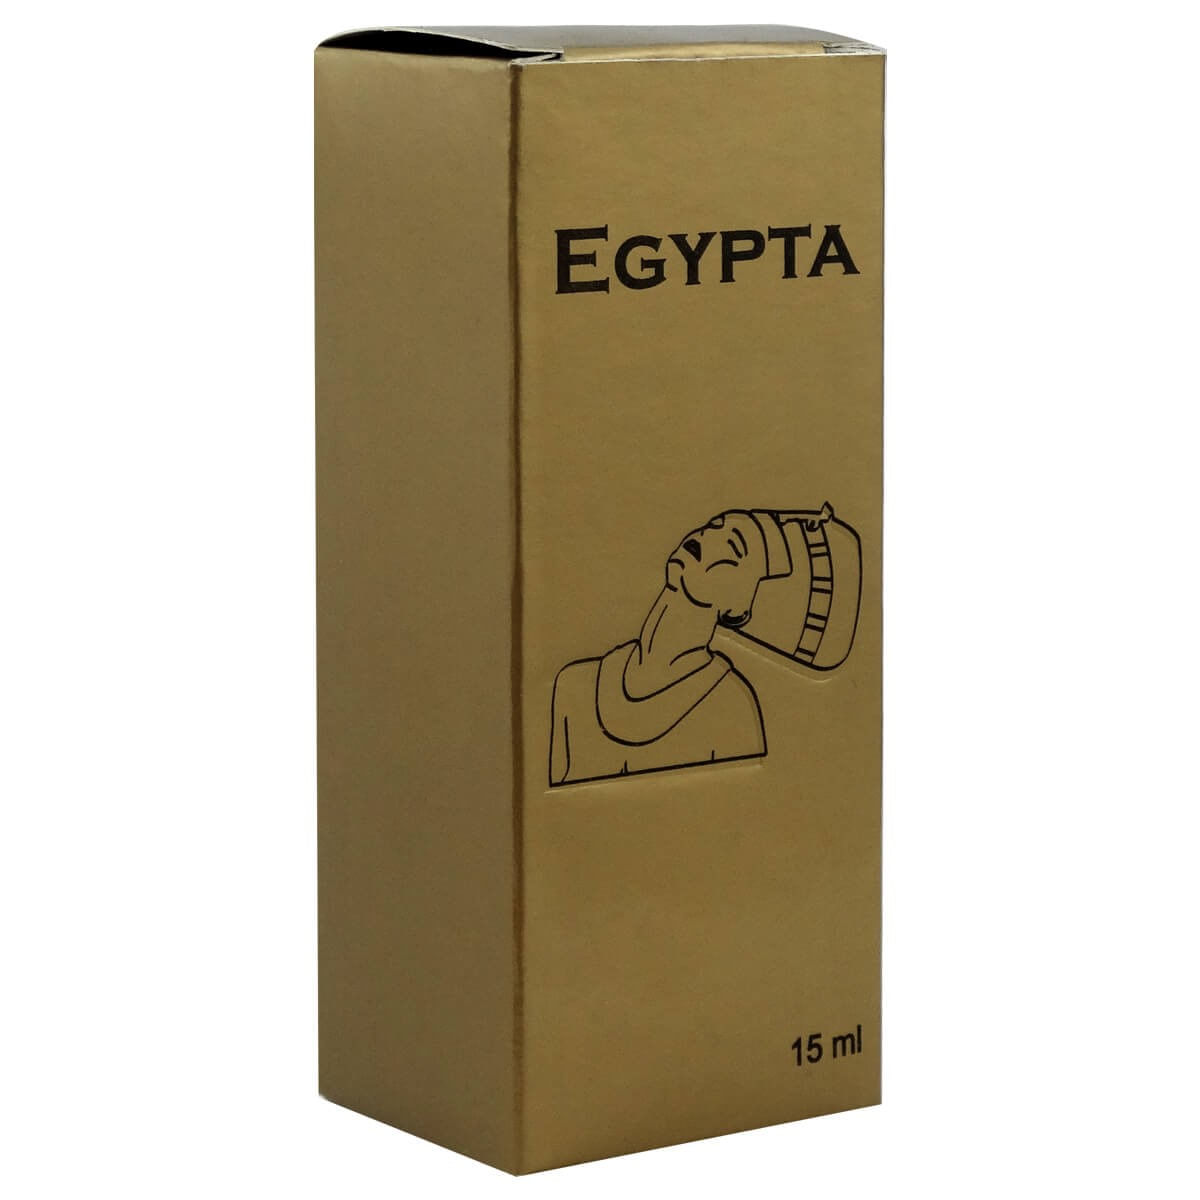 Egypta Perfume Unisex com Essências Egipcias 15 ml Menu dos Prazeres